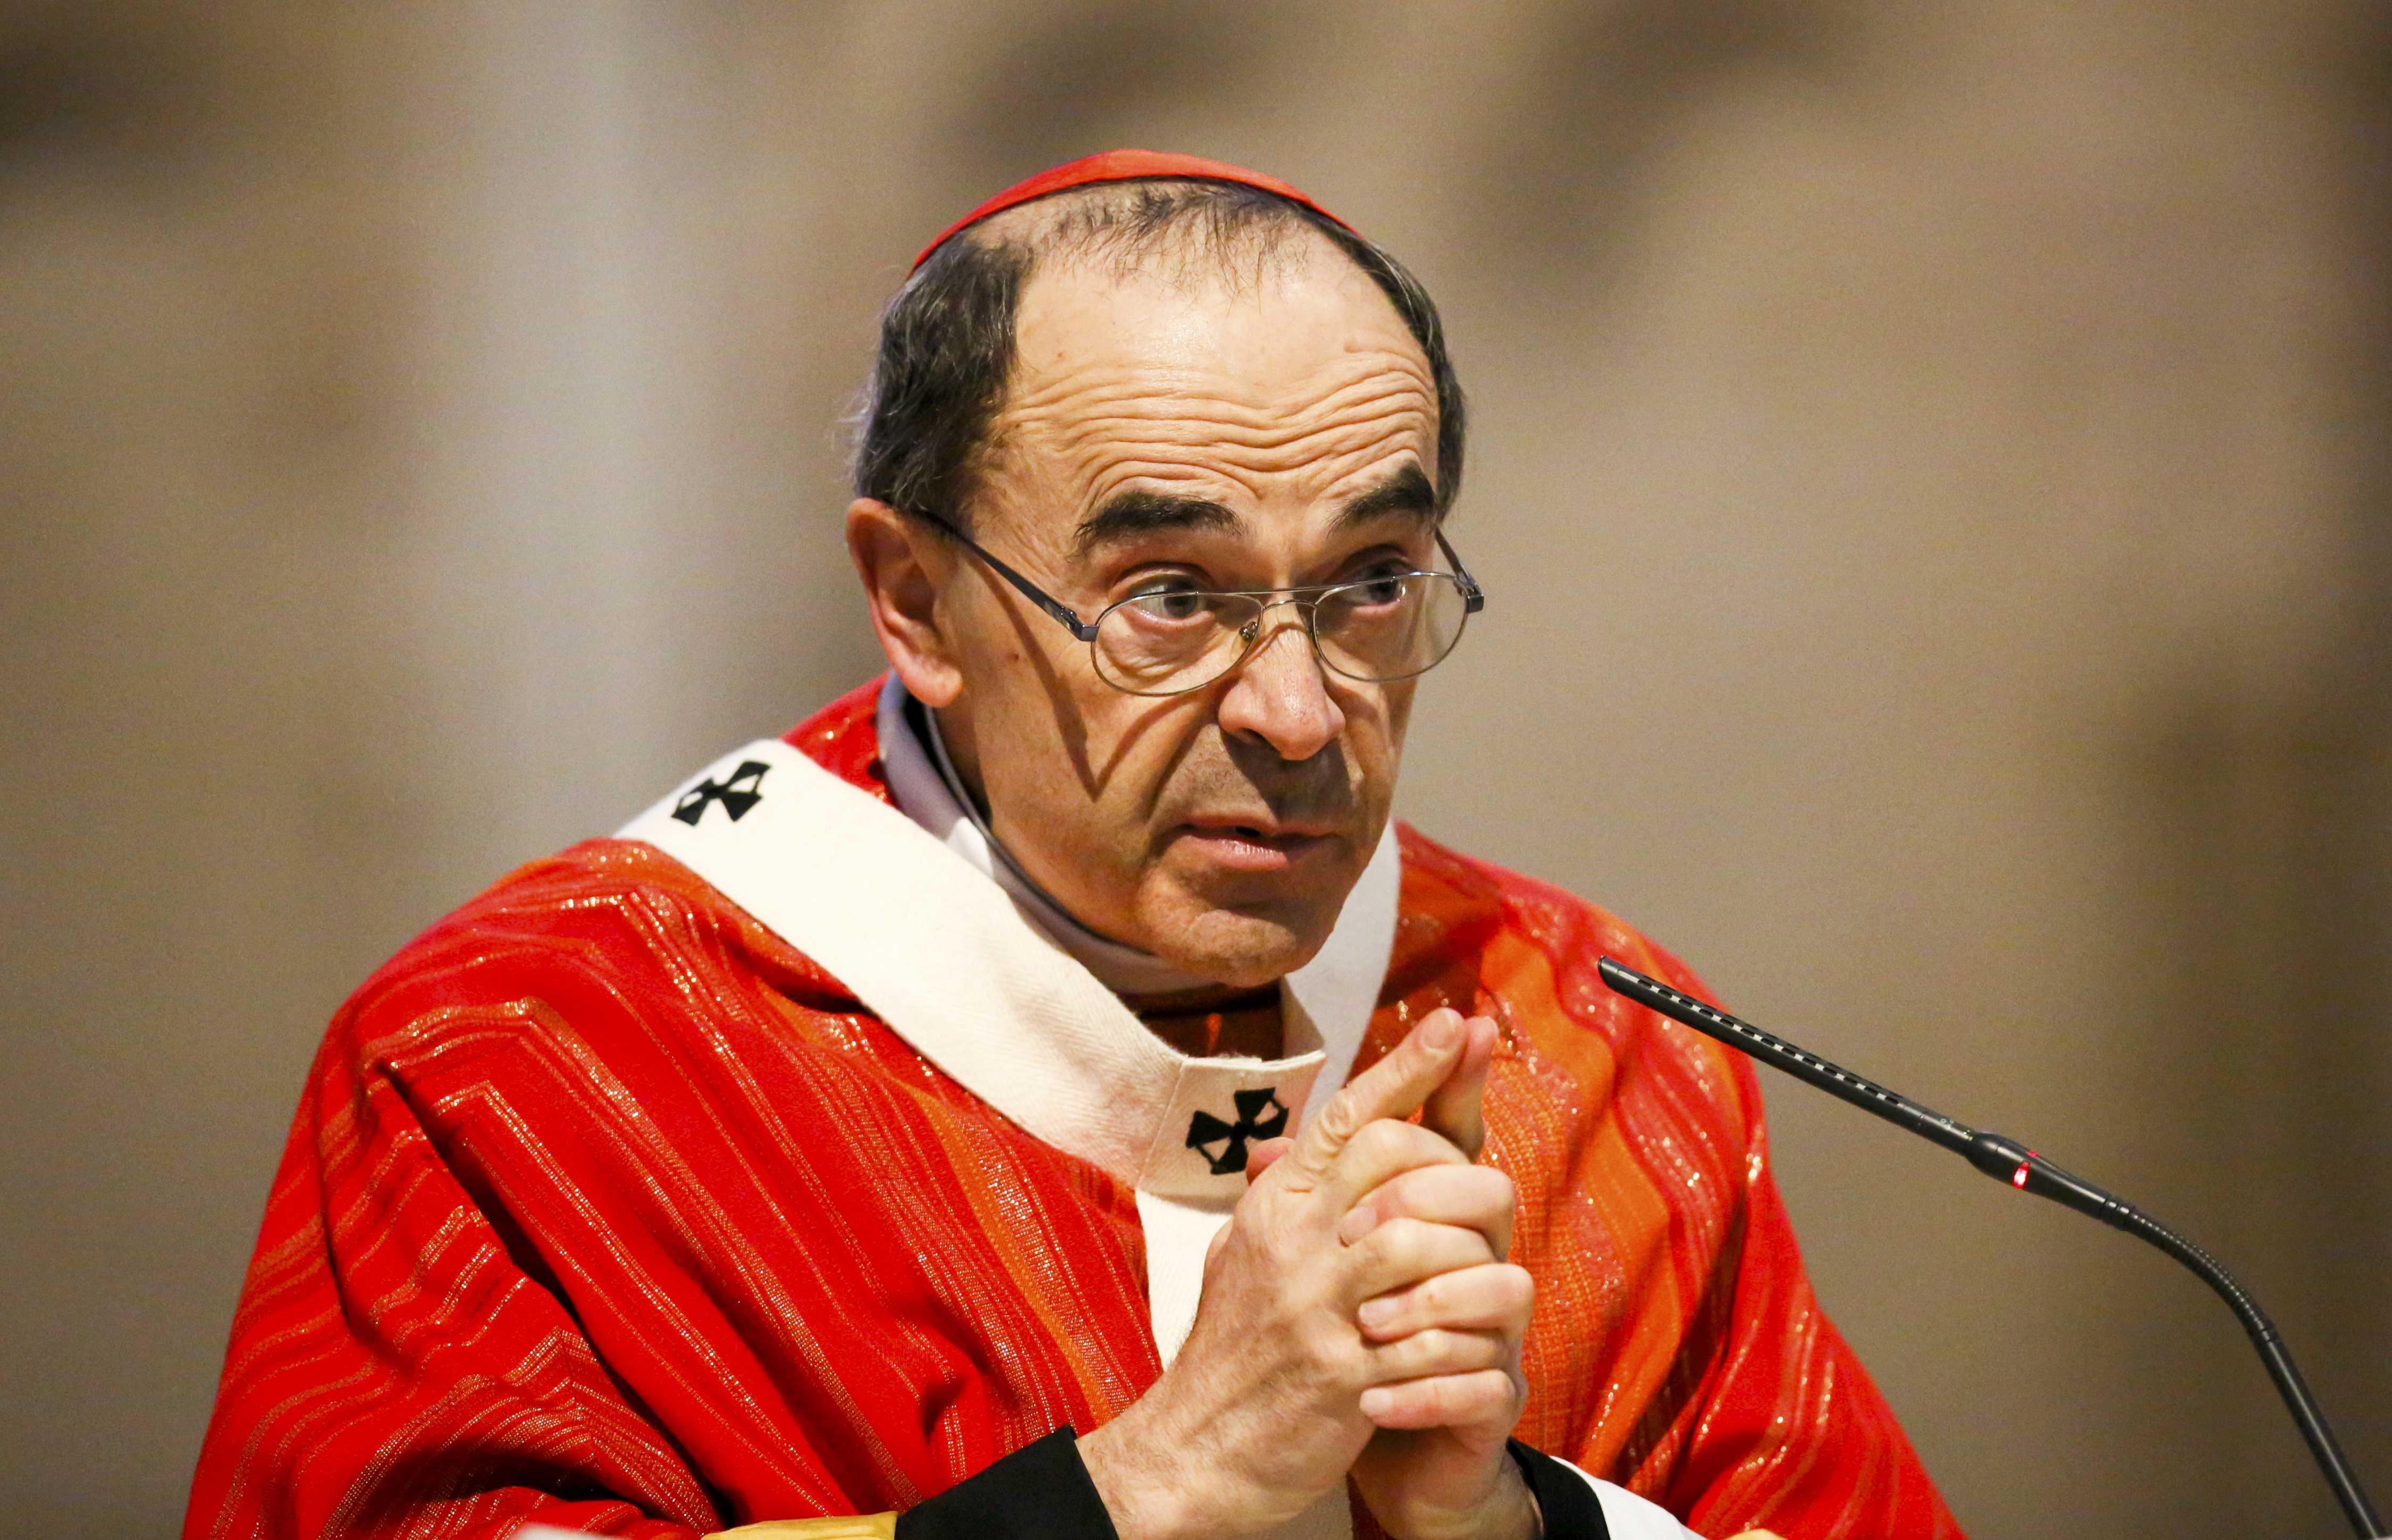 Philippe Barbarin es uno de los principales jerarcas de la iglesia católica francesa.